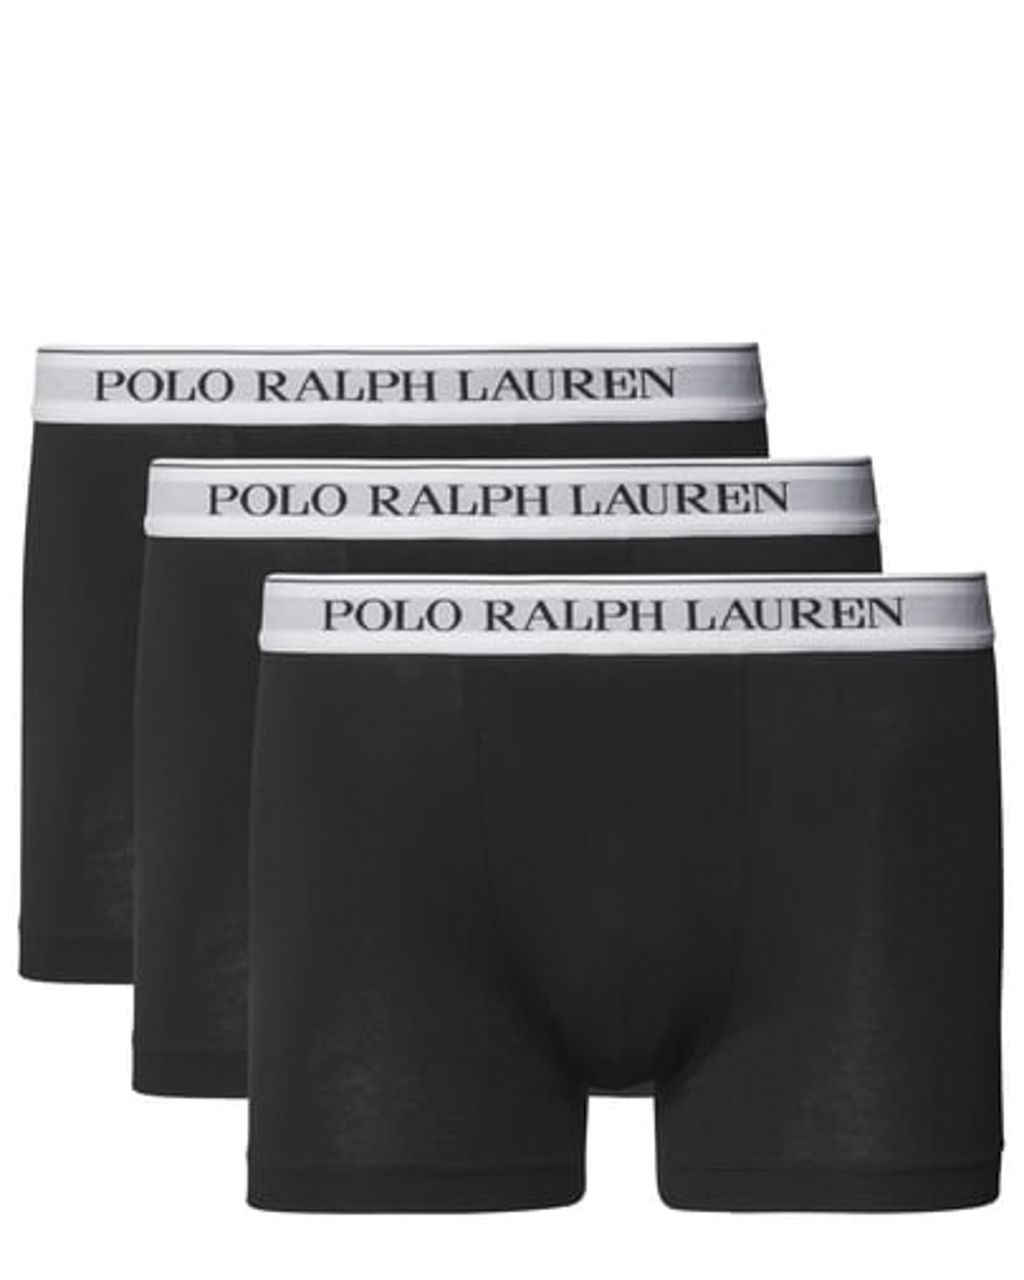 Polo Ralph Lauren Boxershort Zwart 078598-001-L